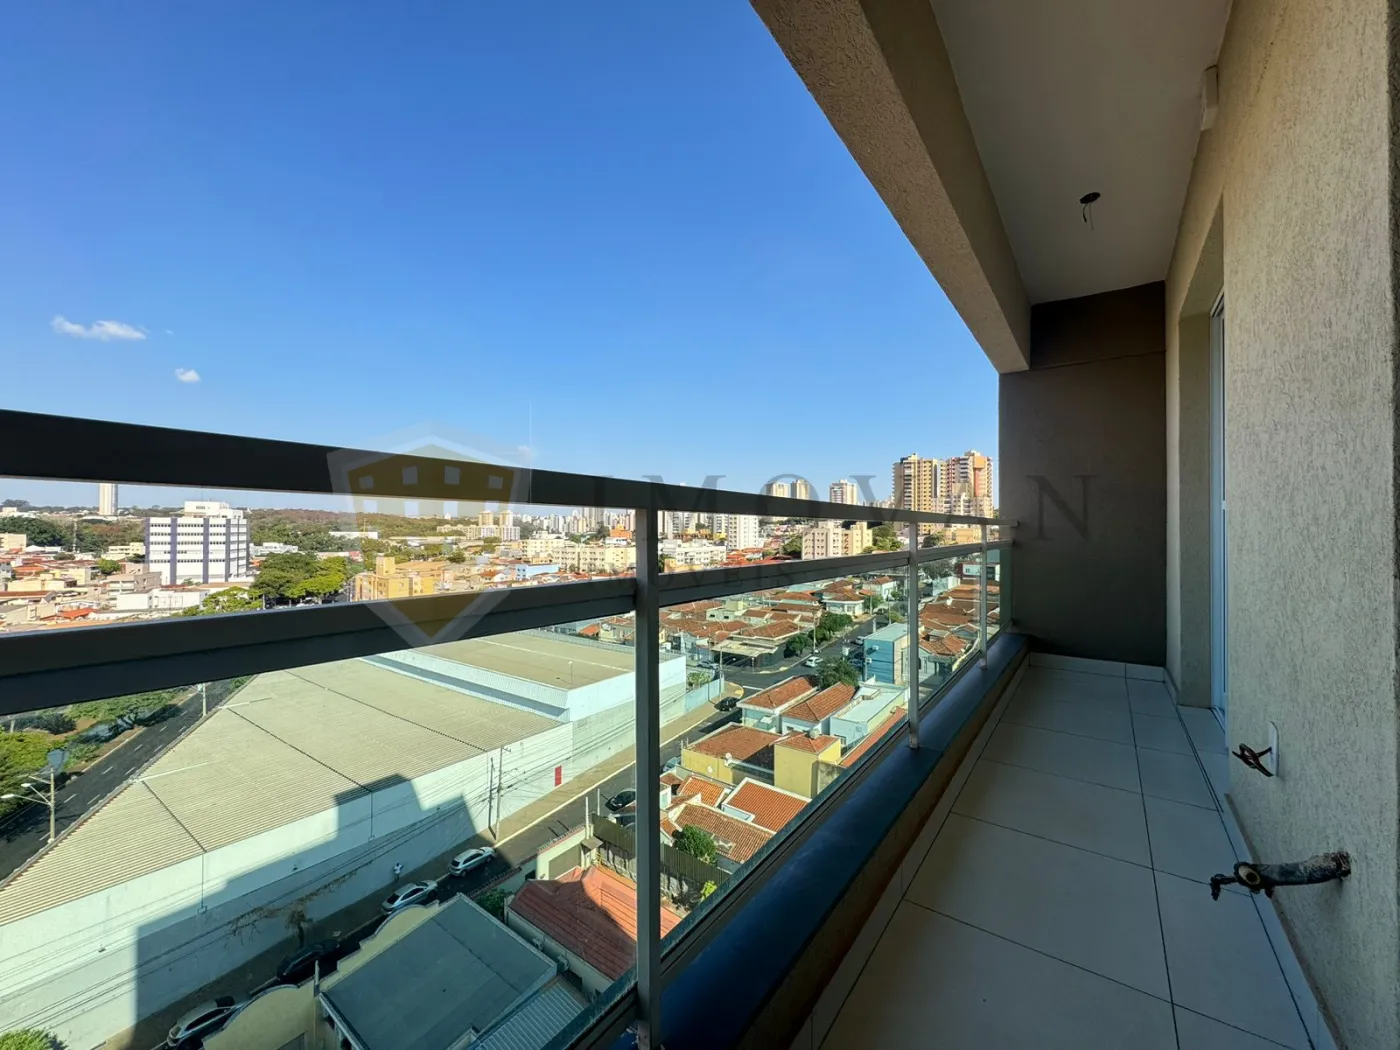 Comprar Apartamento / Kitchnet em Ribeirão Preto R$ 230.000,00 - Foto 12